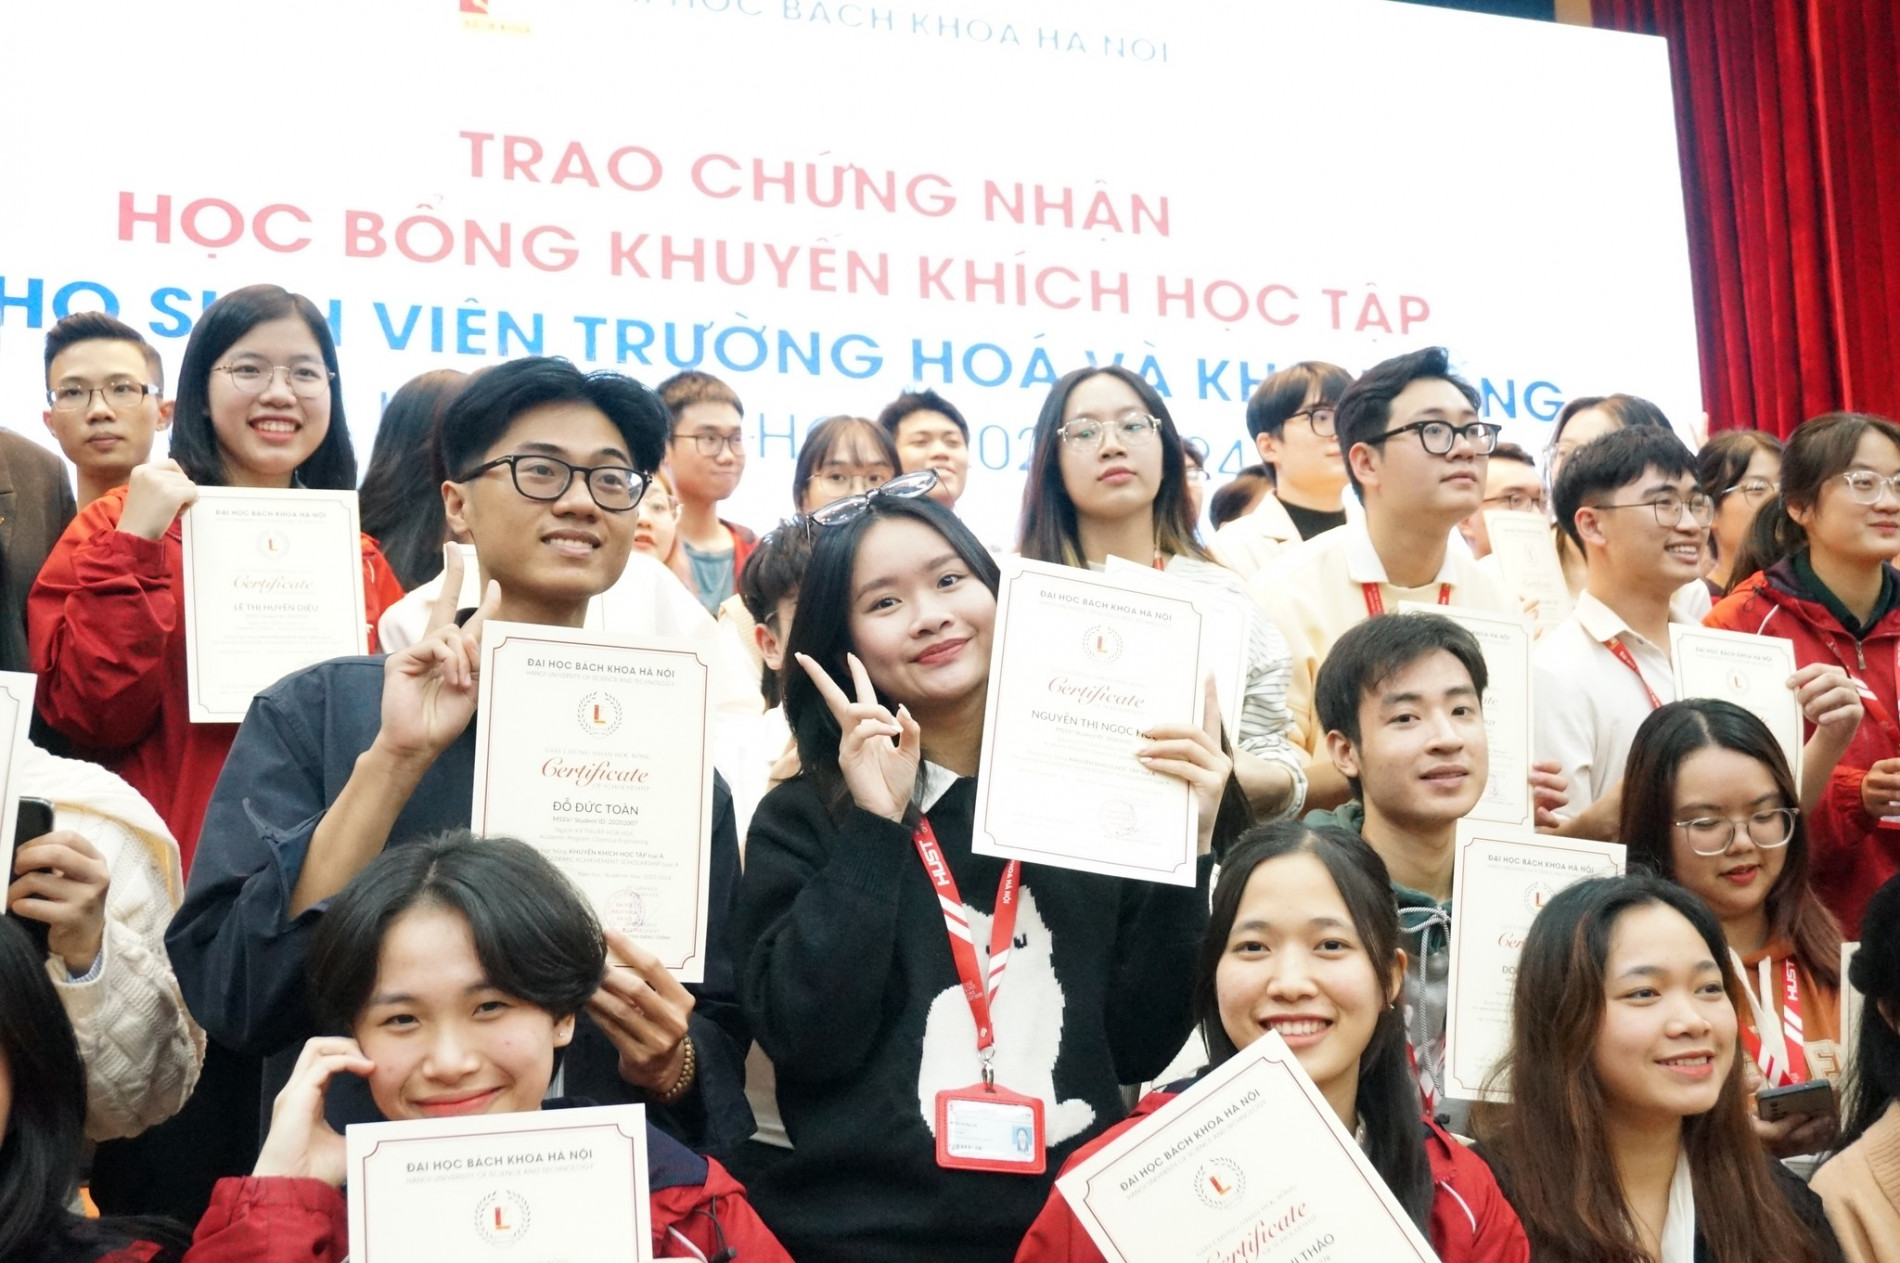 Trường Hóa và Khoa học sự sống cùng Ban CTSV, ĐHBK Hà Nội trao học bổng KKHT cho 179 sinh viên của Trường. Tổng giá trị học bổng được trao khoảng 3 tỷ đồng (tháng 11/2023)